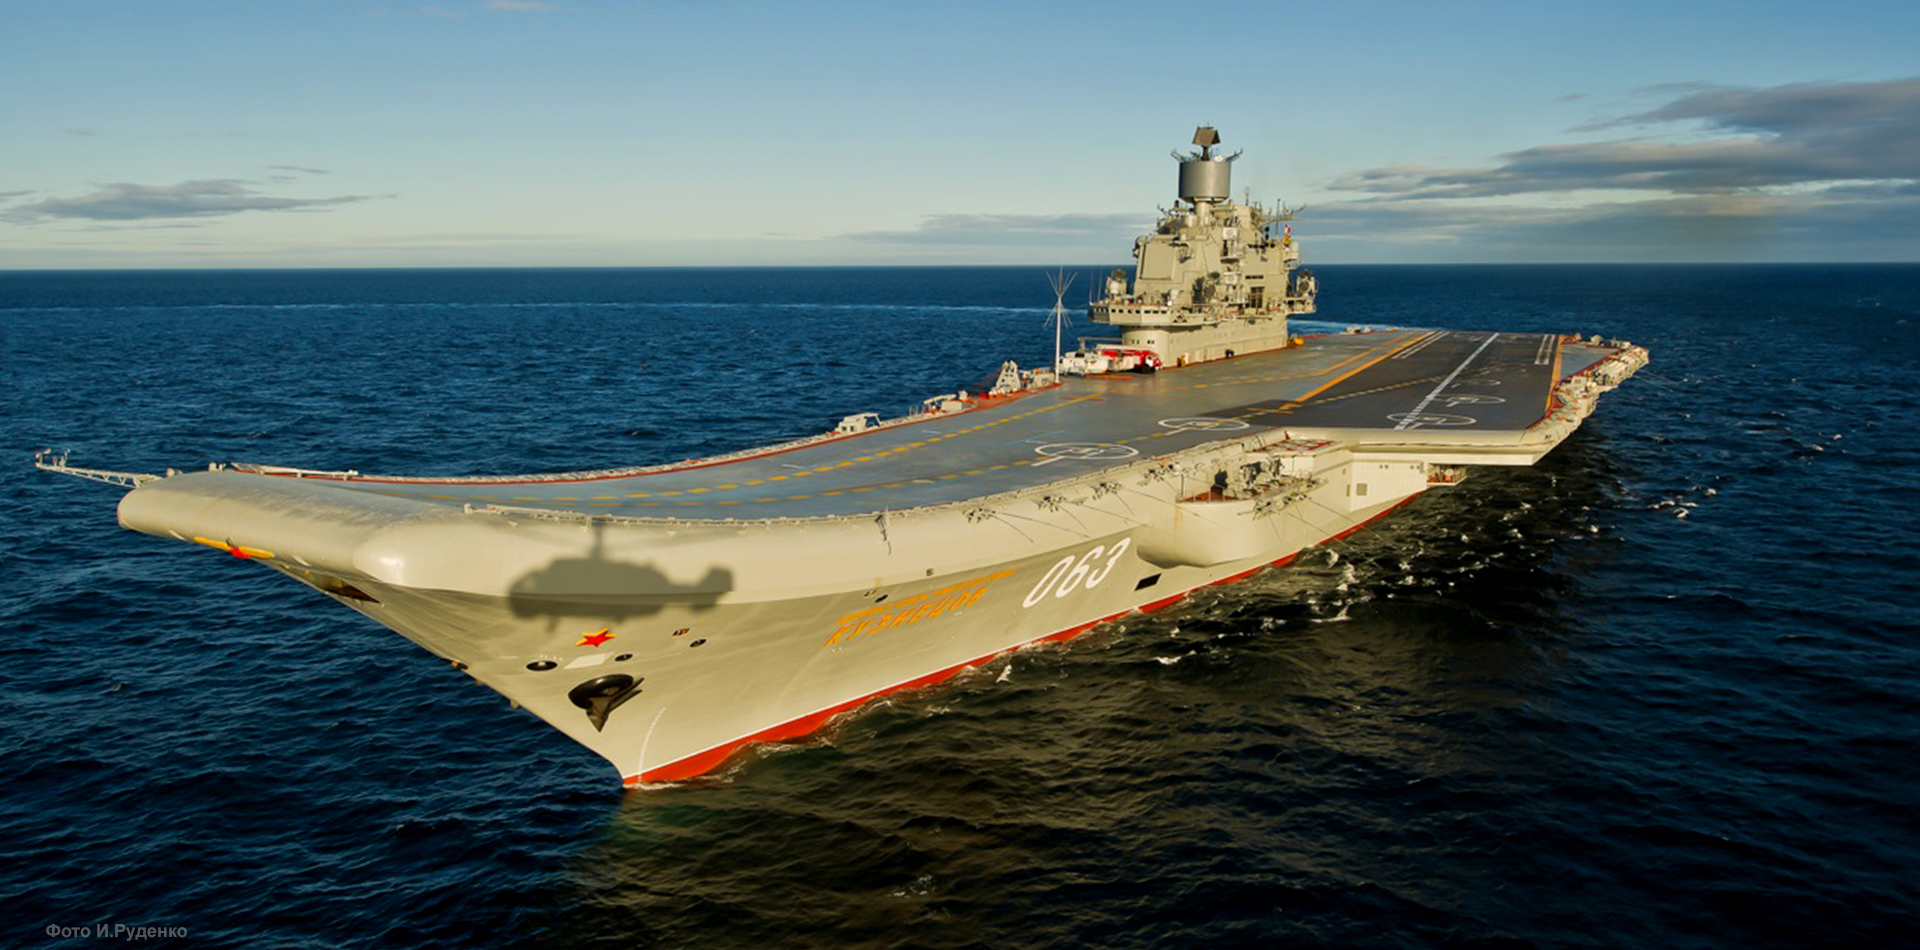 Jedyny rosyjski lotniskowiec Admirał Kuzniecow zapalił się w Murmańsku - jest w remoncie od 2018 r.